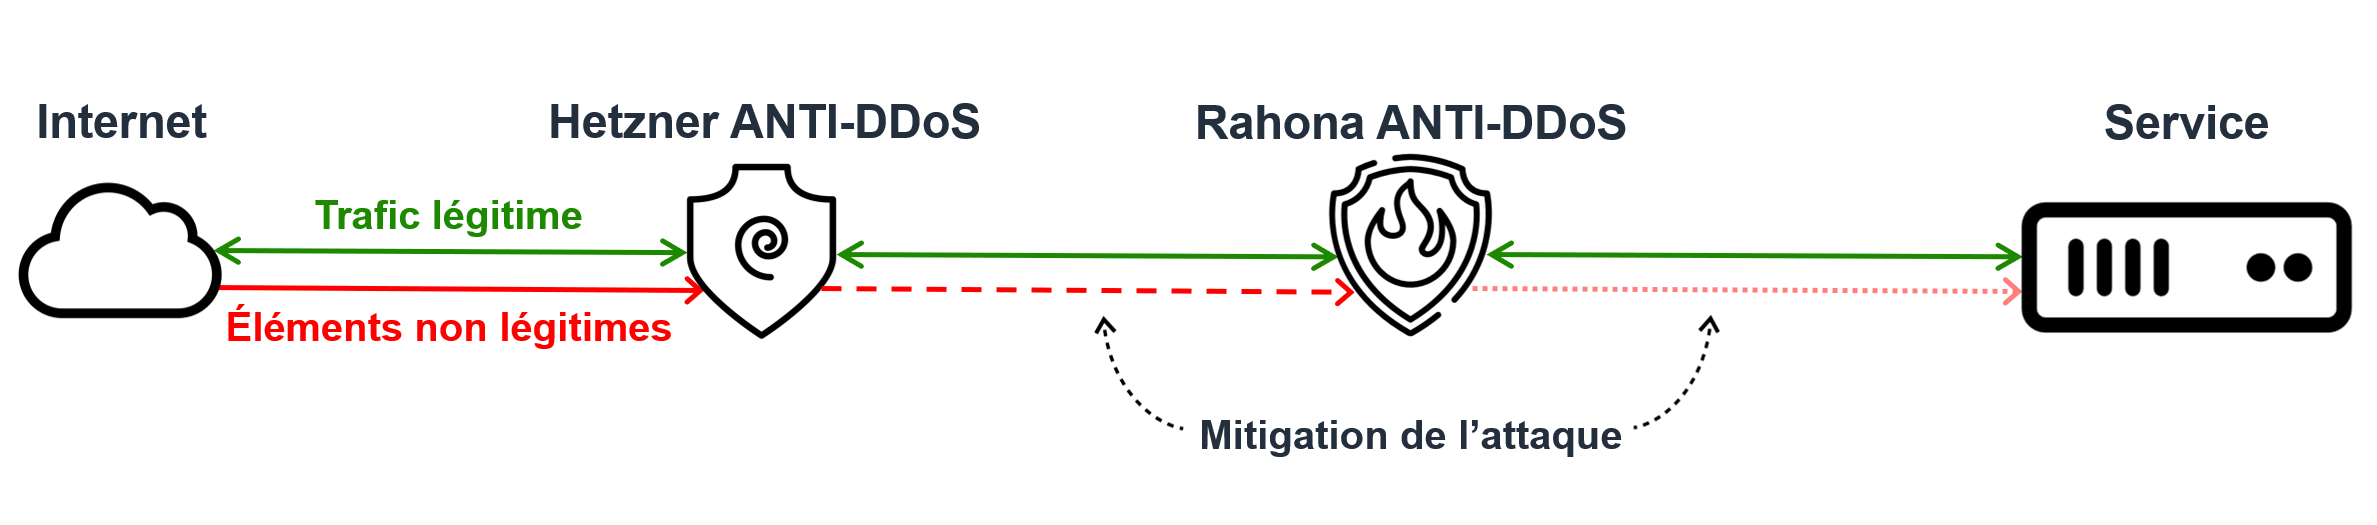 ANTI-DDoS Rahona